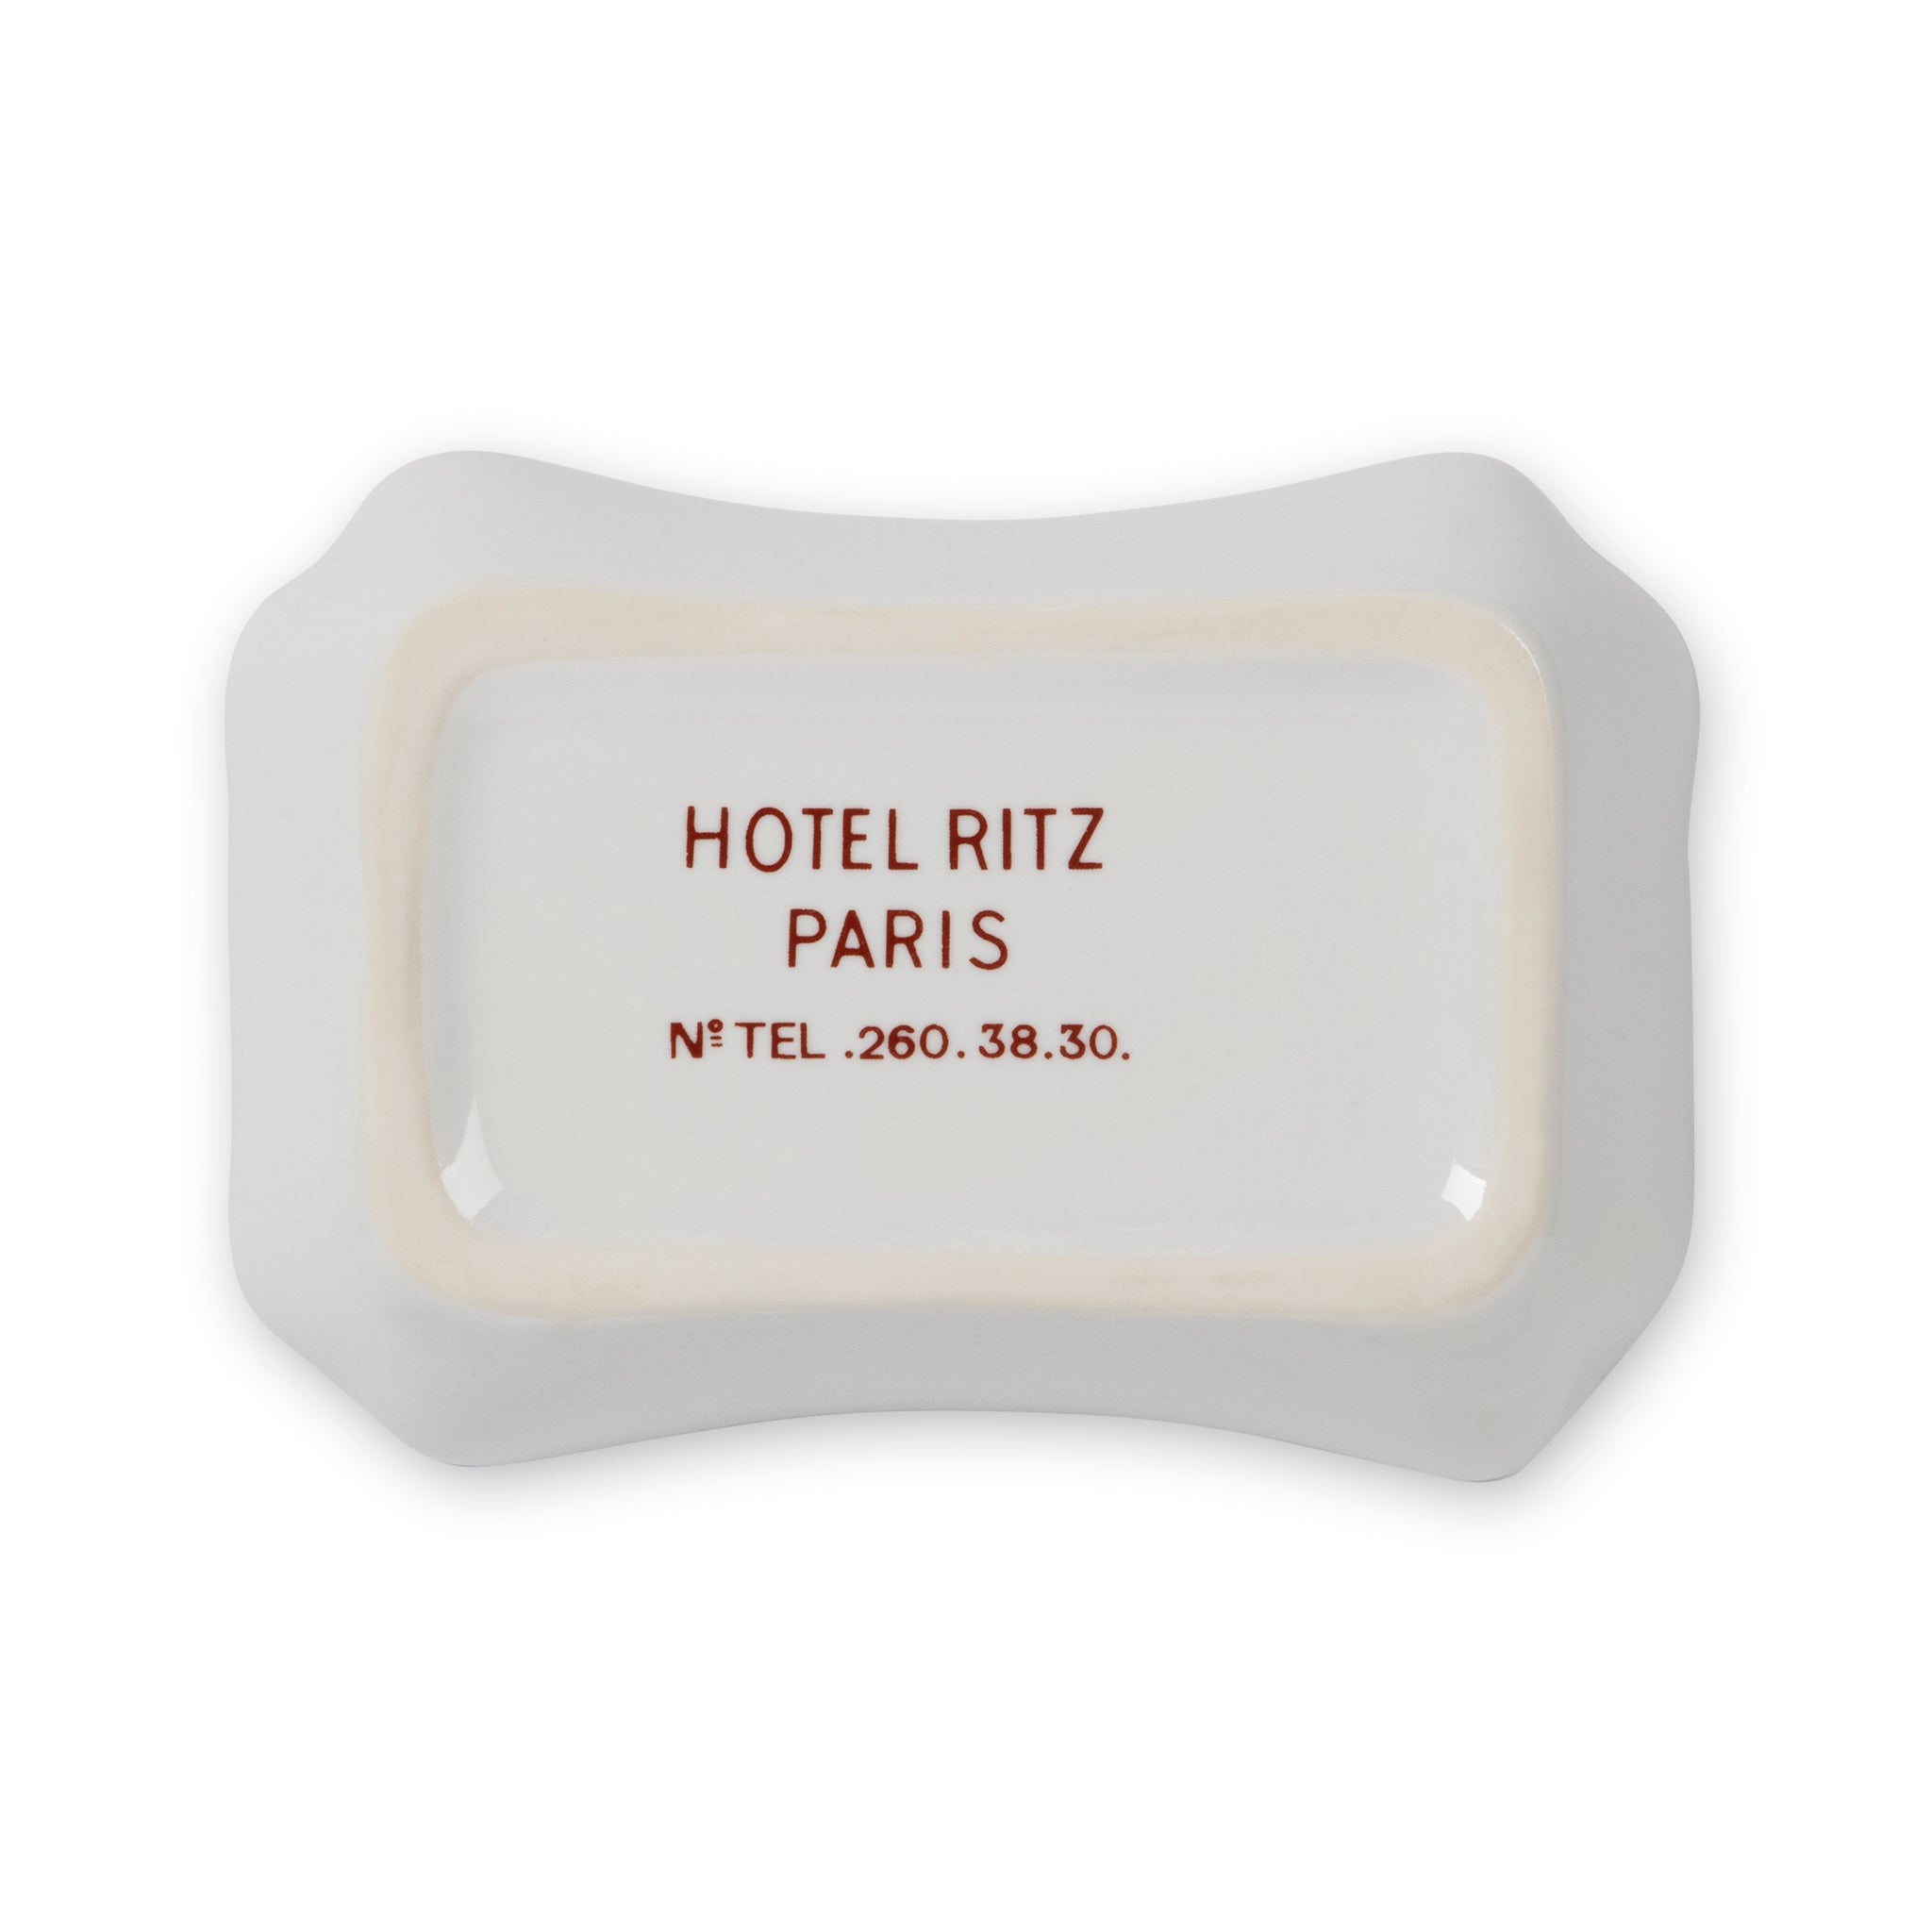 Vintage Hotel Ritz Paris Porcelain Ashtray Dish